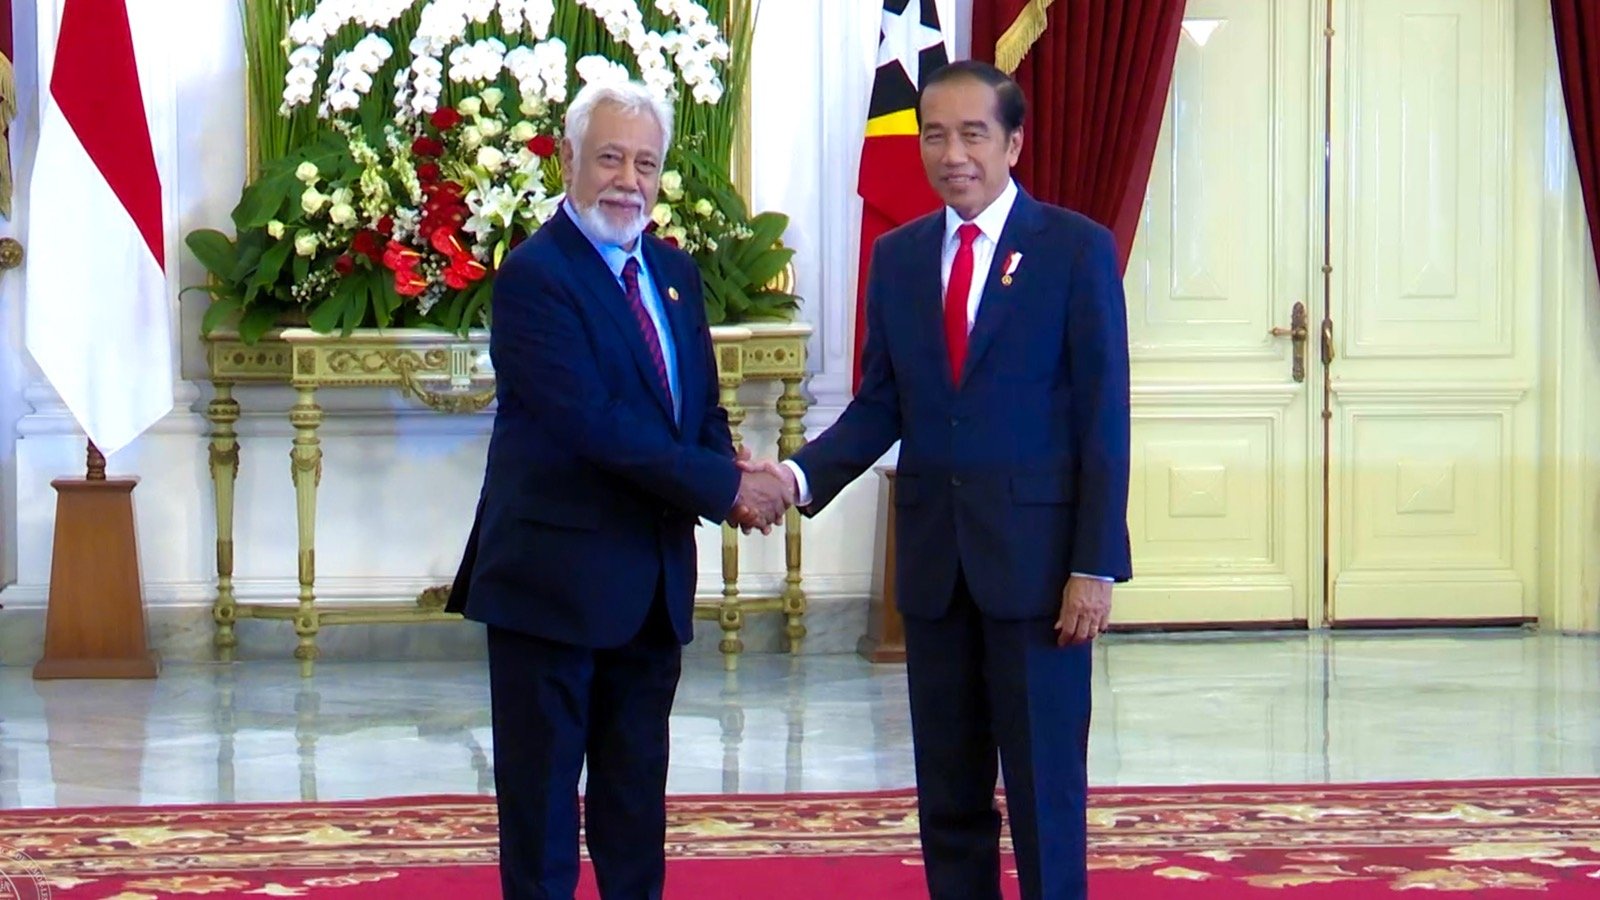 Jokowi – Xanana Deskute Komprimisiu Indonézia Apoia Rekursu no Ekonomia TL